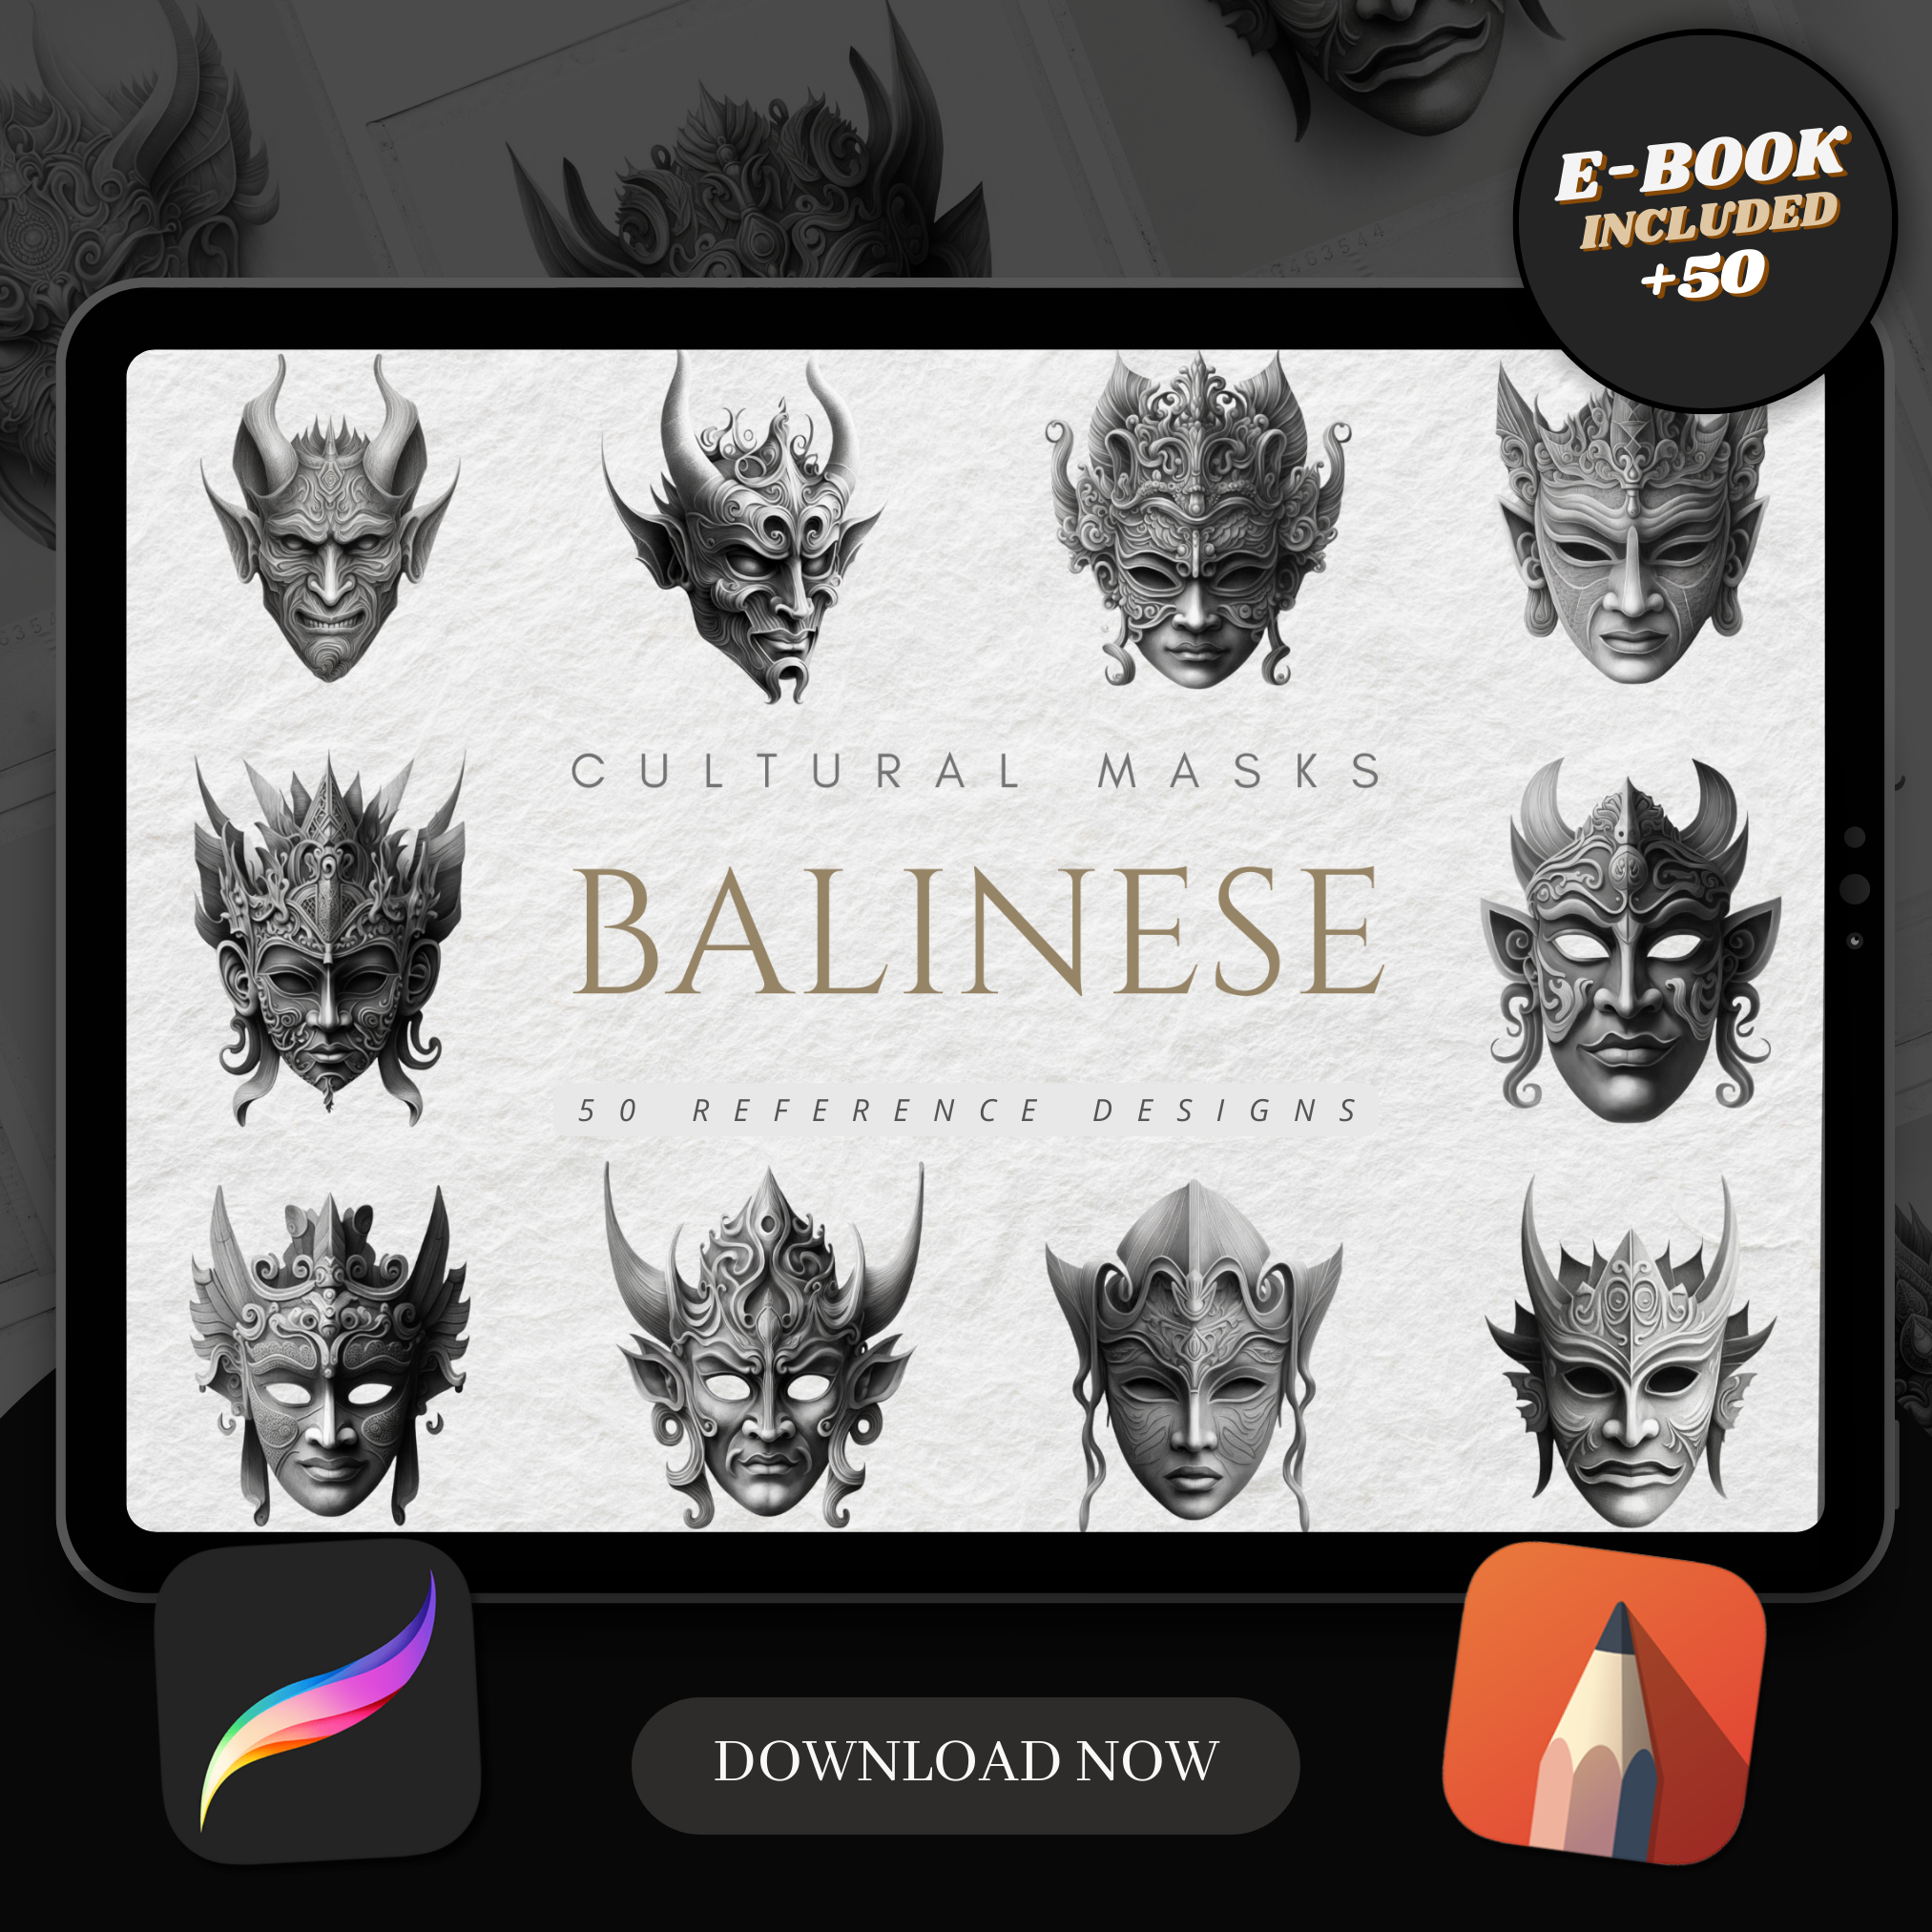 Bali Masks Digital Reference Design Collection: 50 Procreate & Sketchbook Images